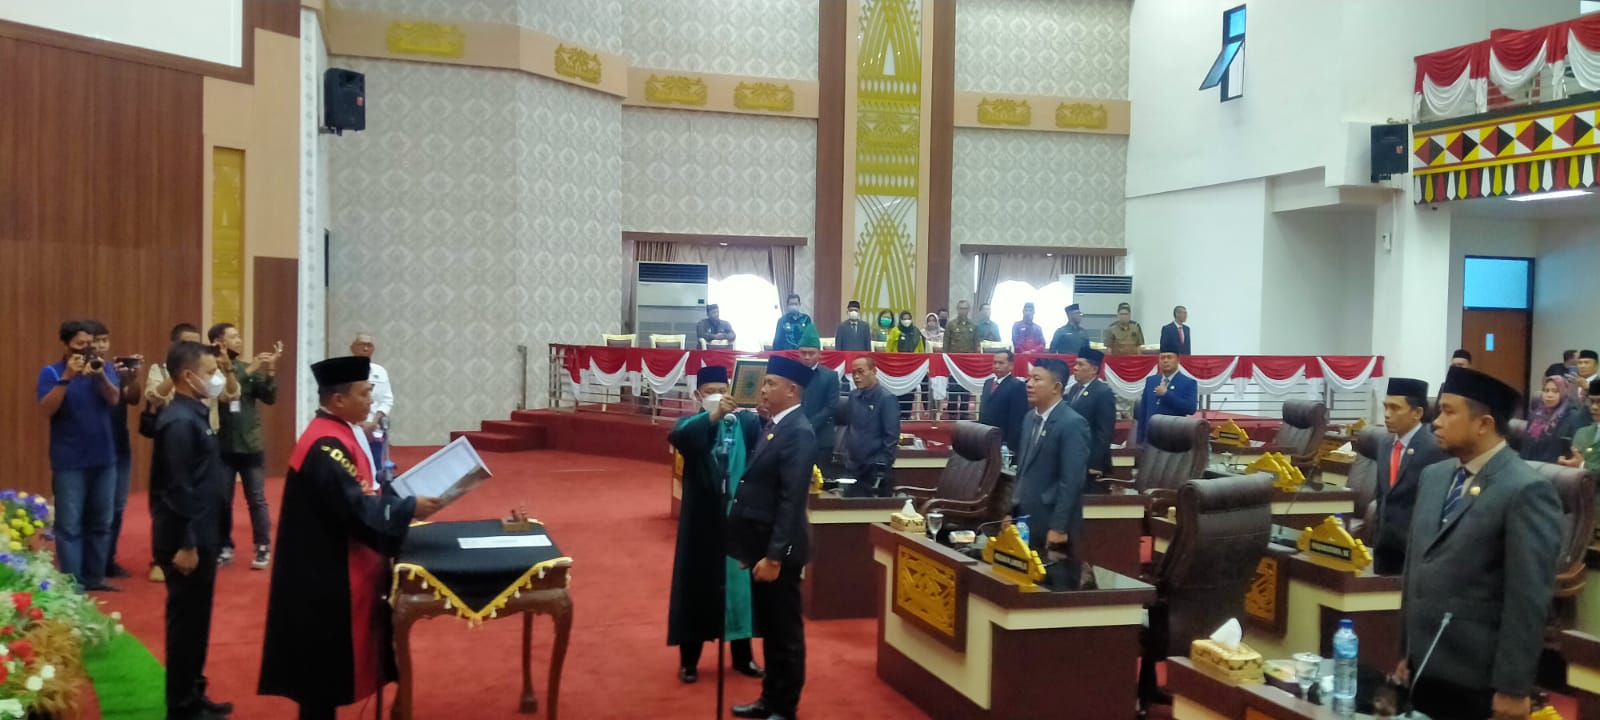 Yurizal Resmi Gantikan Rizky Raya Saputra Sebagai Wakil Ketua DPRD Pringsewu